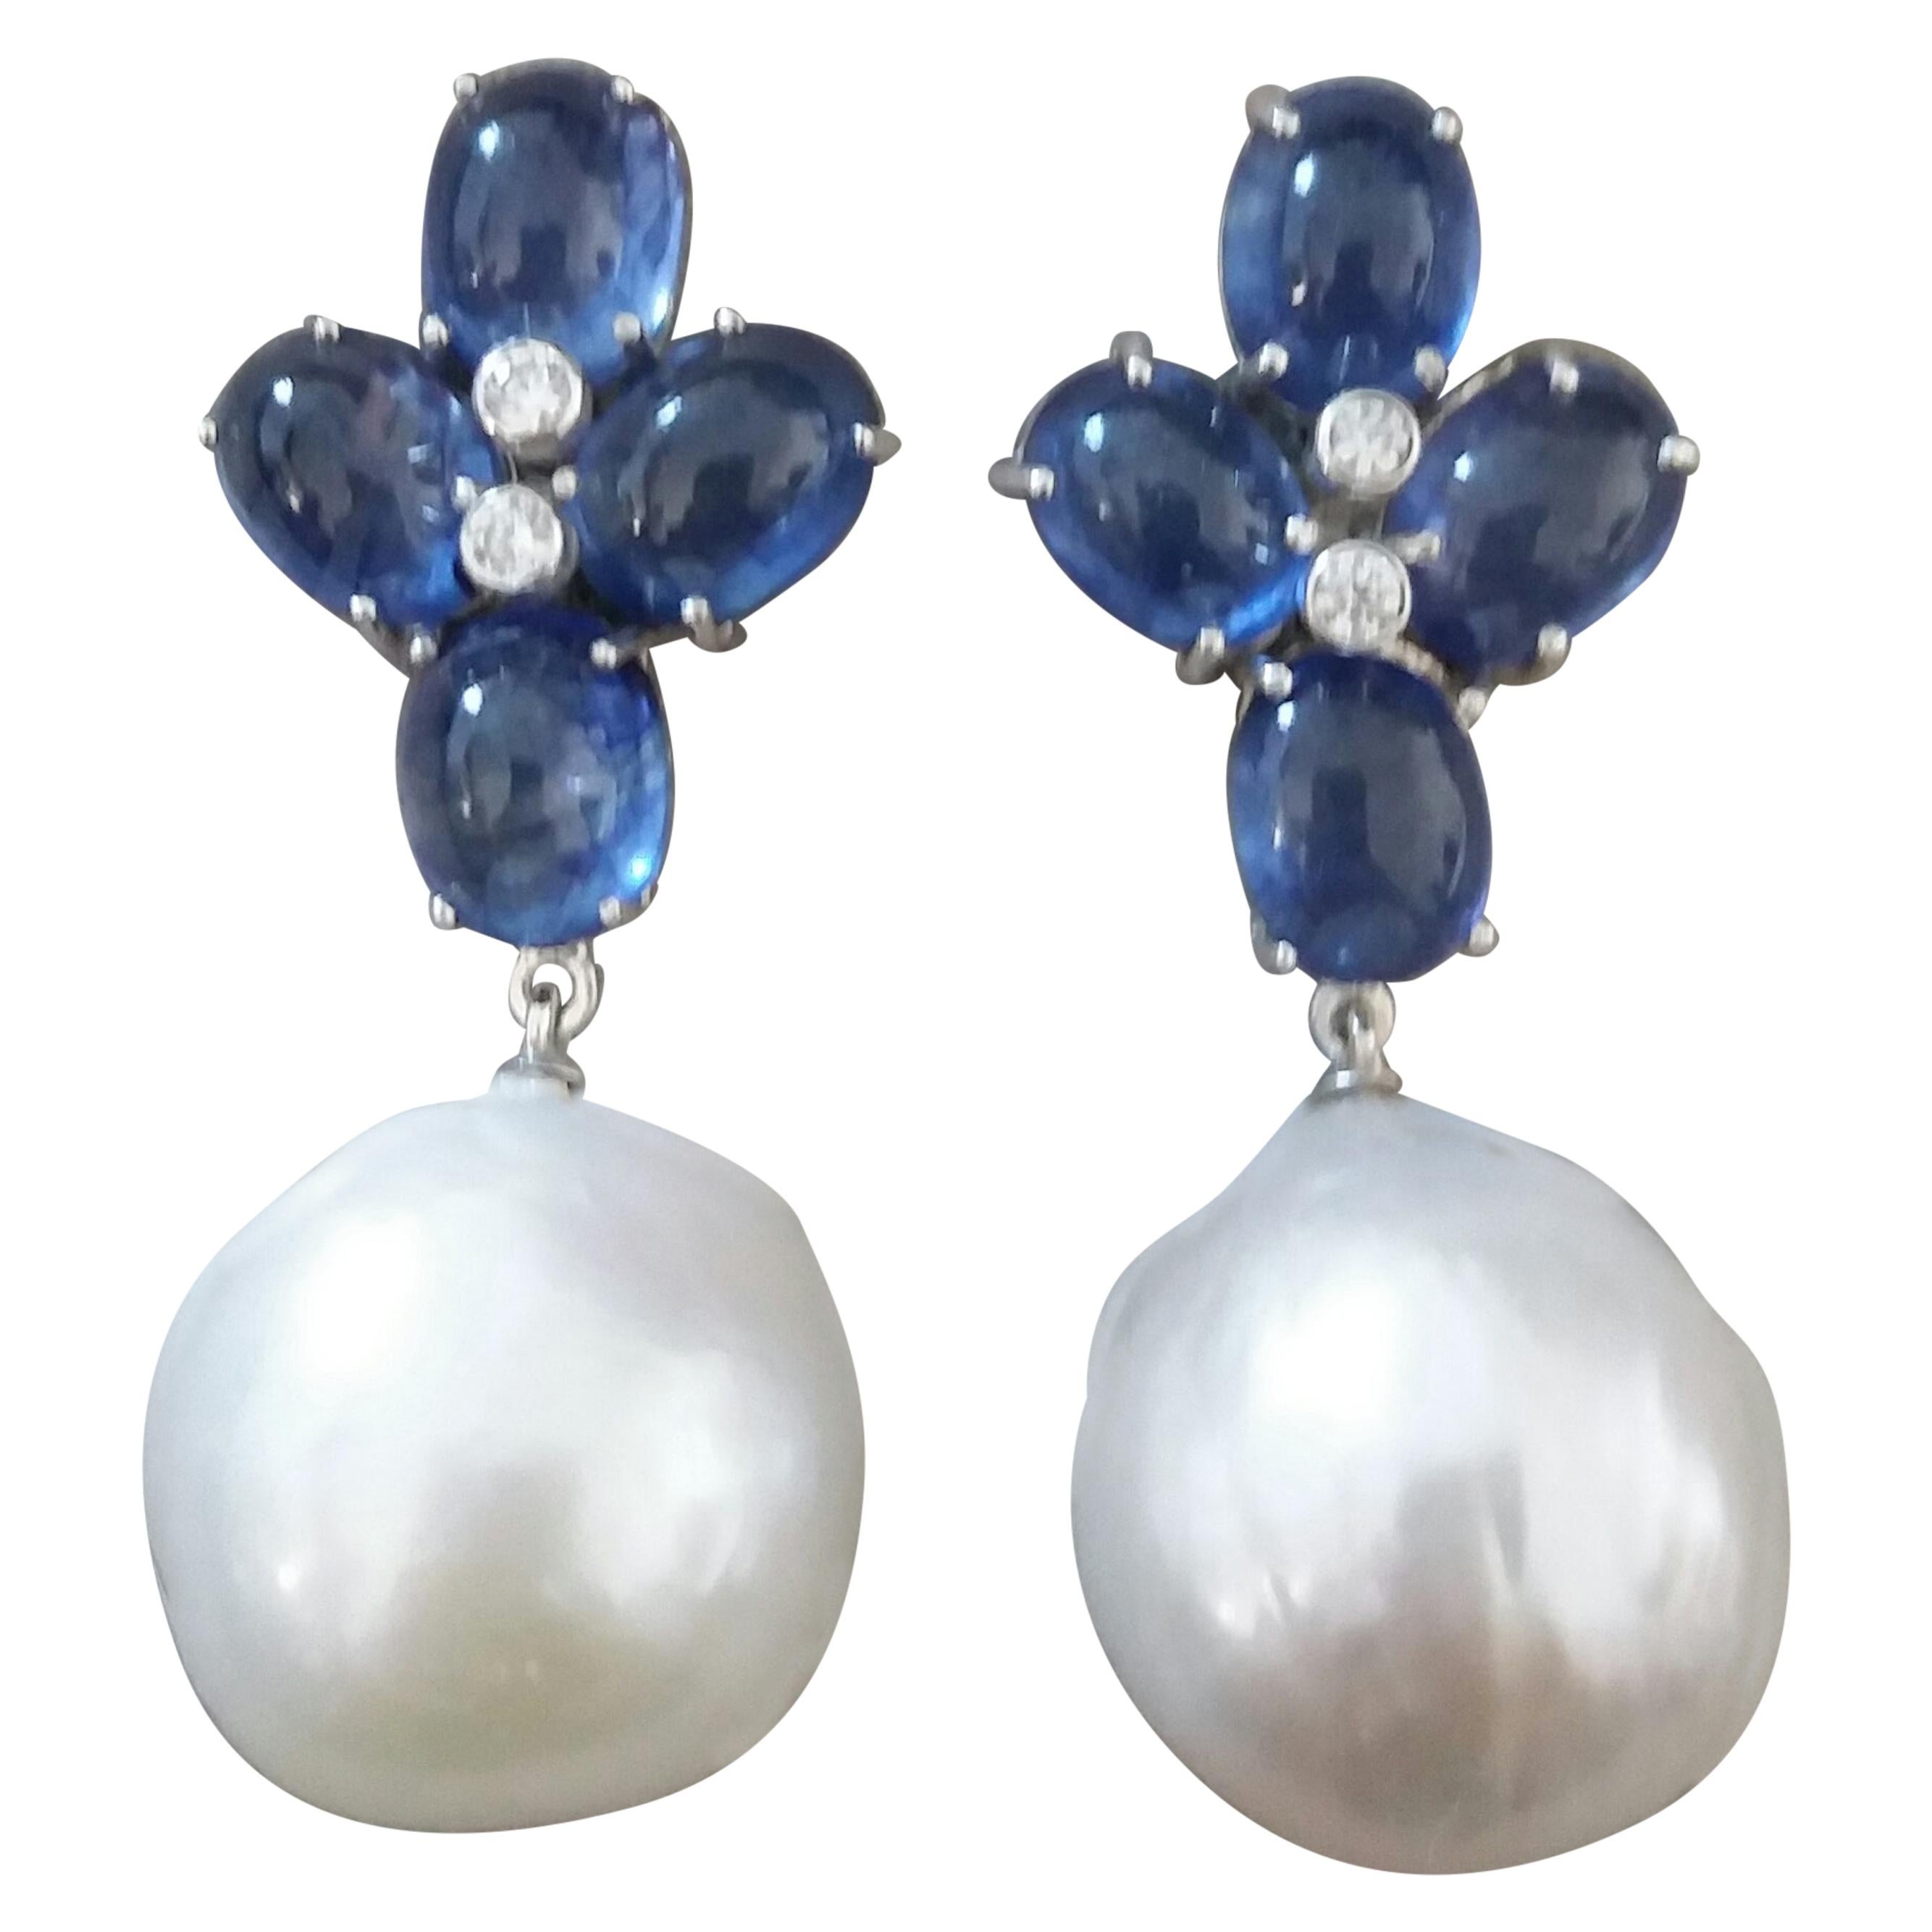 Boucles d'oreilles en or avec saphirs bleus et saphirs ovales, diamants et perles baroques blanches de grande taille